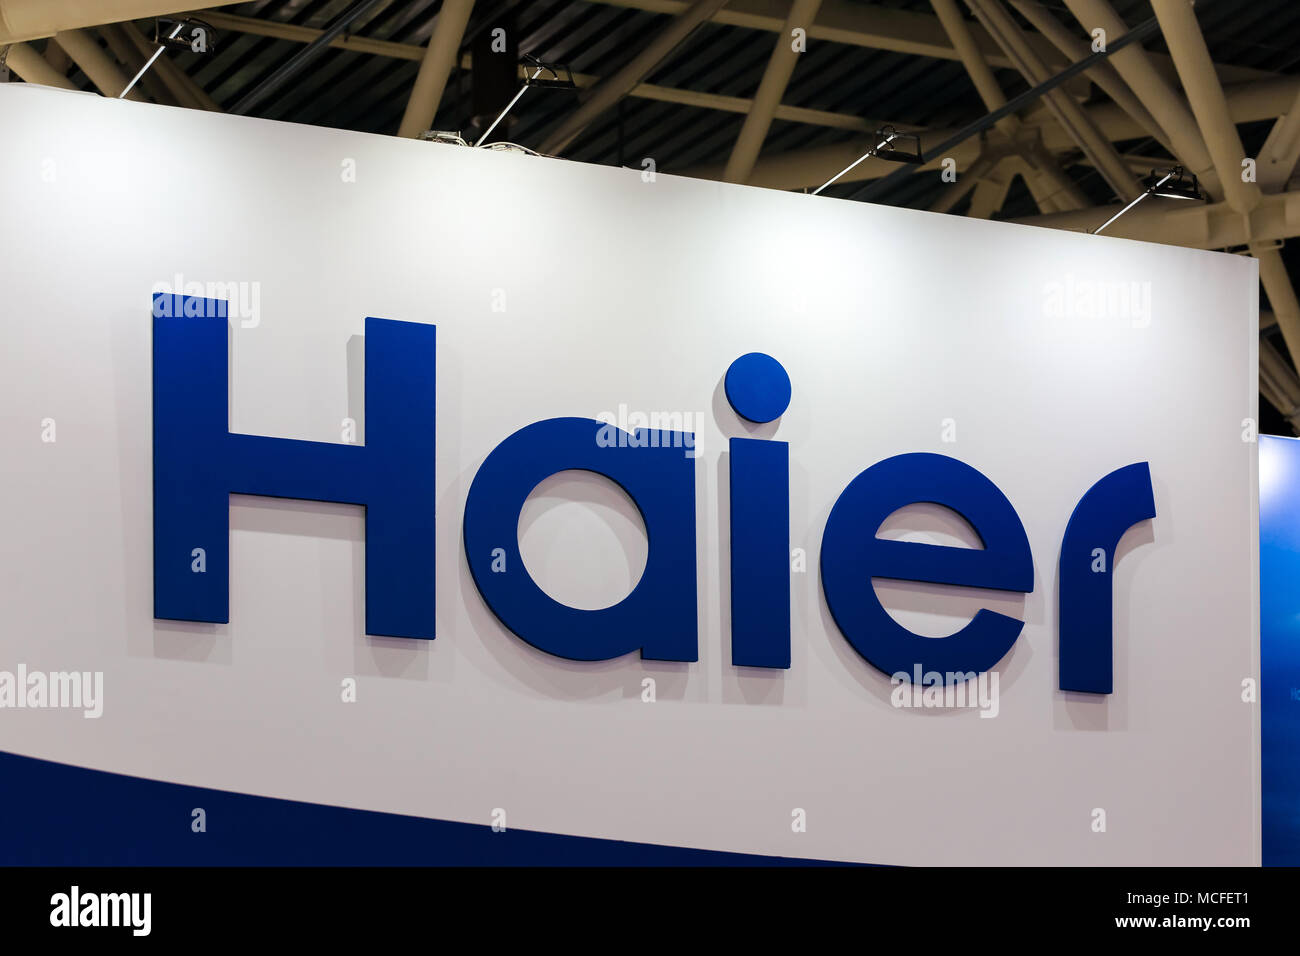 Logo entreprise Haier signe sur le mur. Haier Group Corporation est une multinationale collectif chinois de l'électronique grand public et électroménager company Banque D'Images